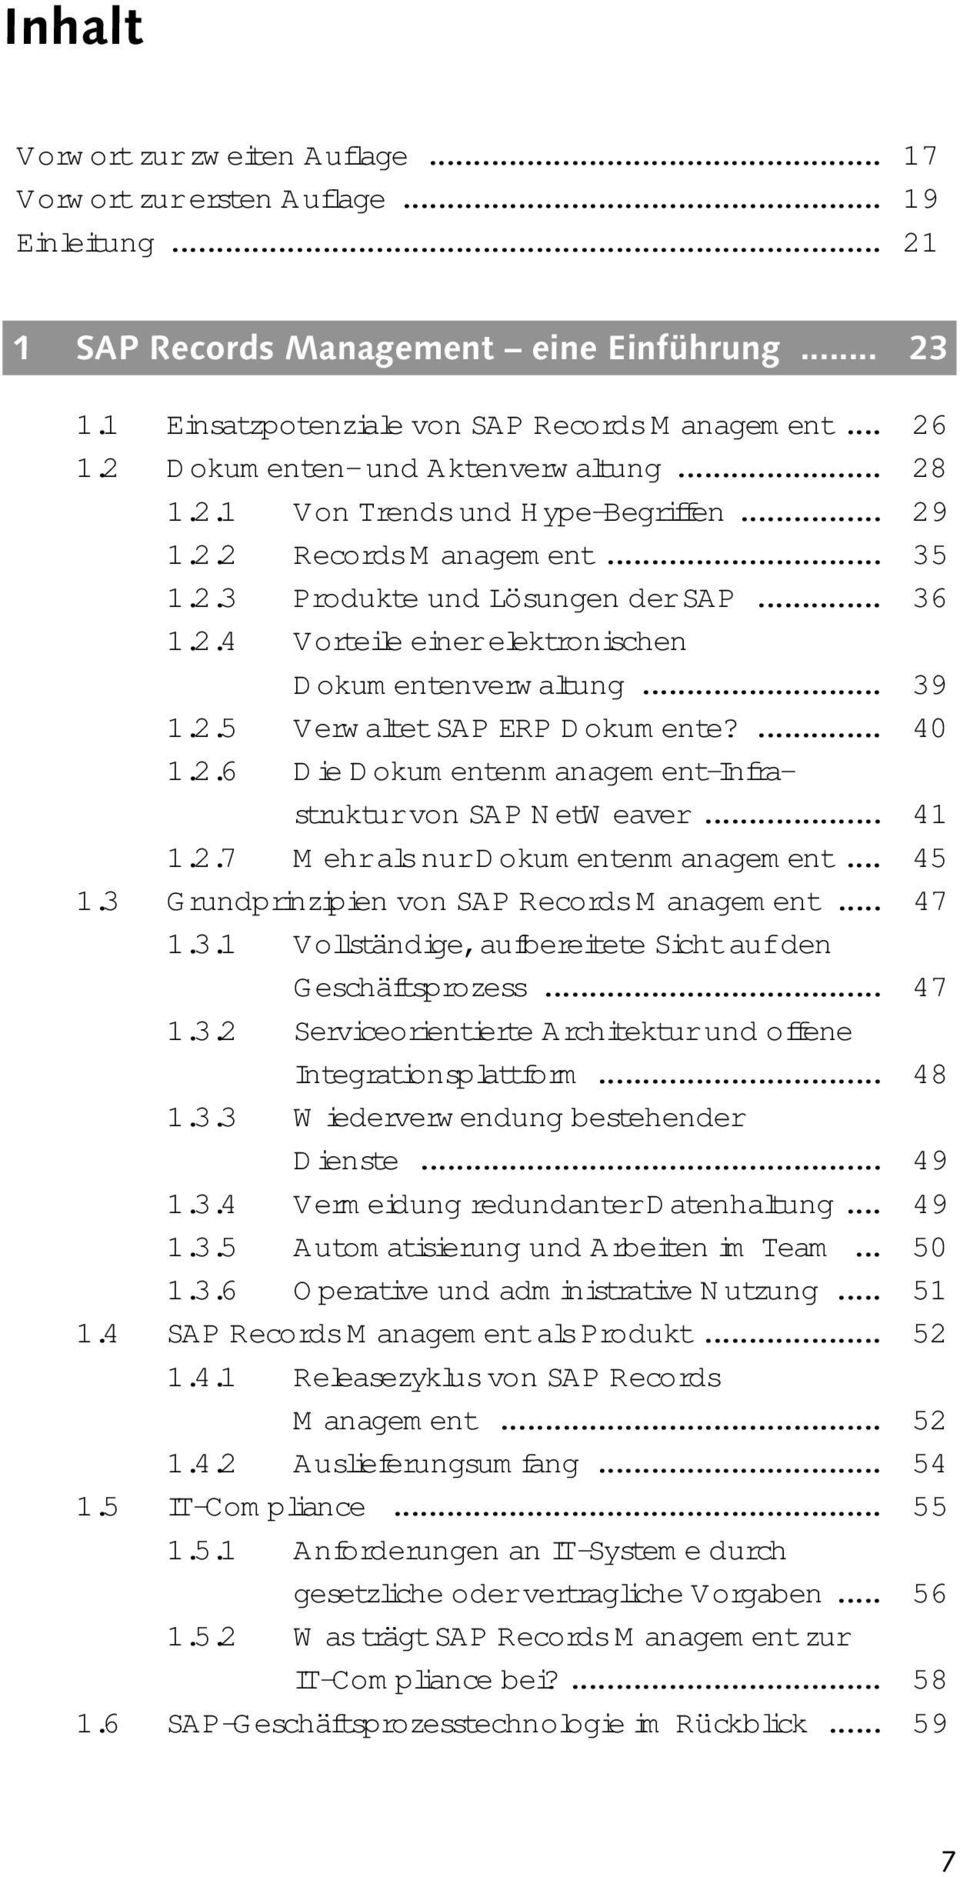 .. 39 1.2.5 Verwaltet SAP ERP Dokumente?... 40 1.2.6 Die Dokumentenmanagement-Infrastruktur von SAP NetWeaver... 41 1.2.7 Mehr als nur Dokumentenmanagement... 45 1.